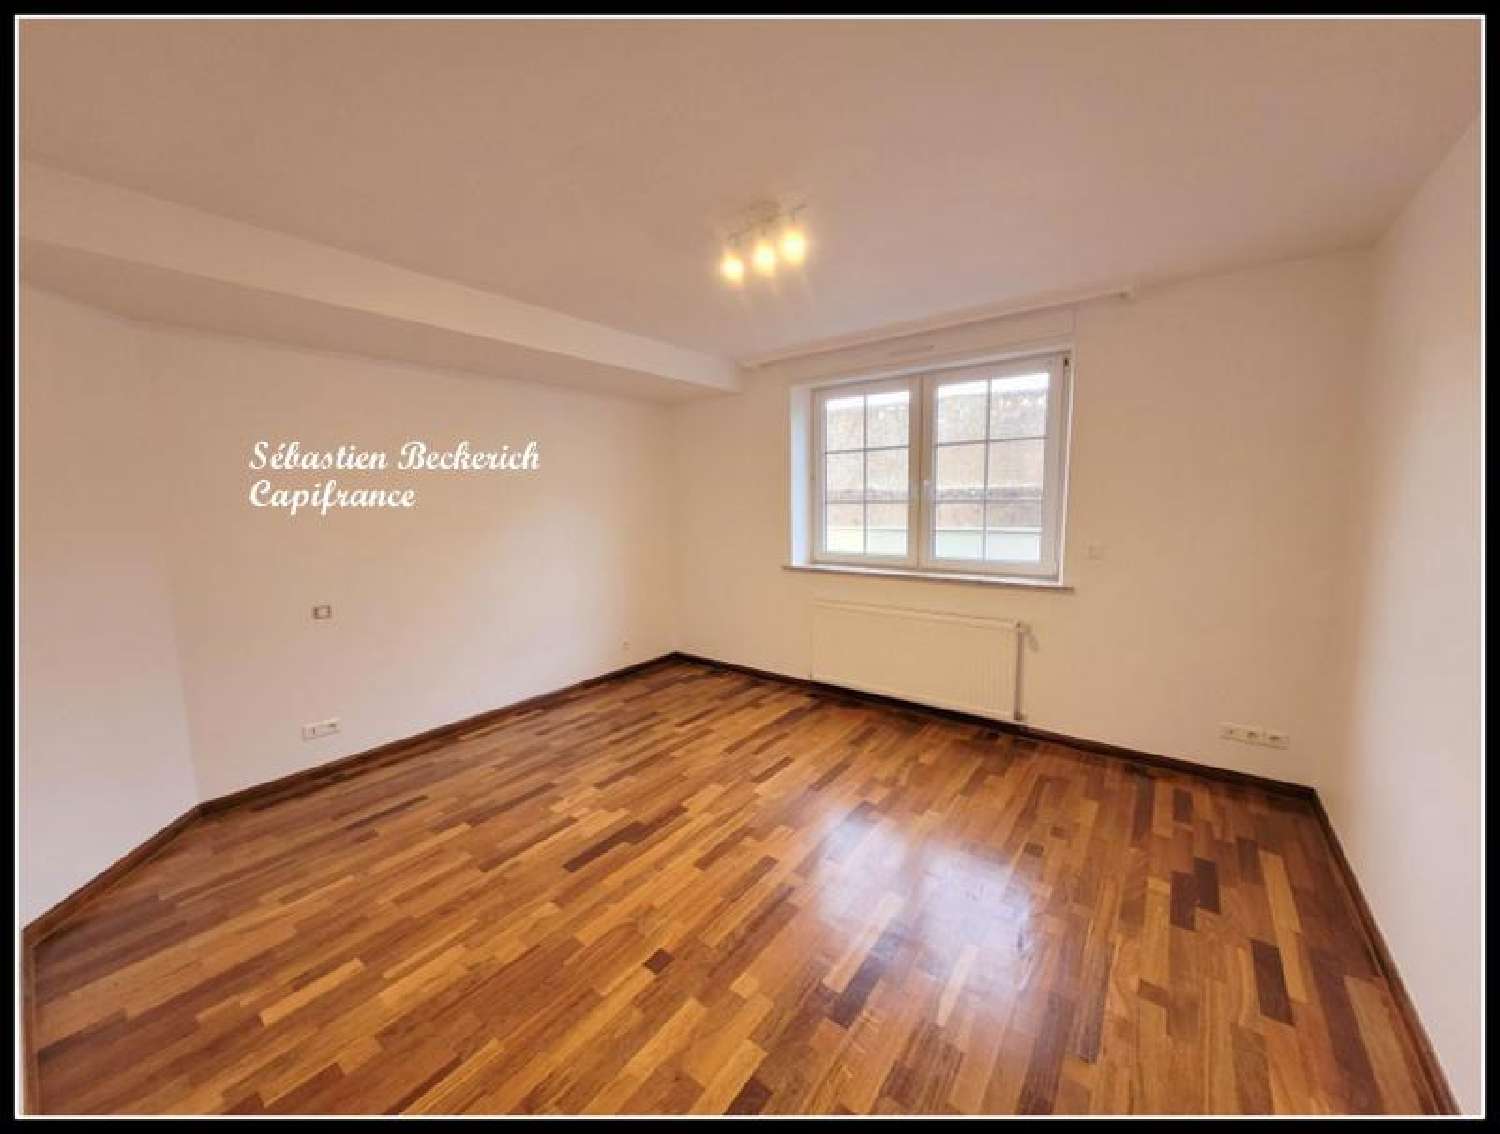  à vendre appartement Sarreguemines Moselle 4